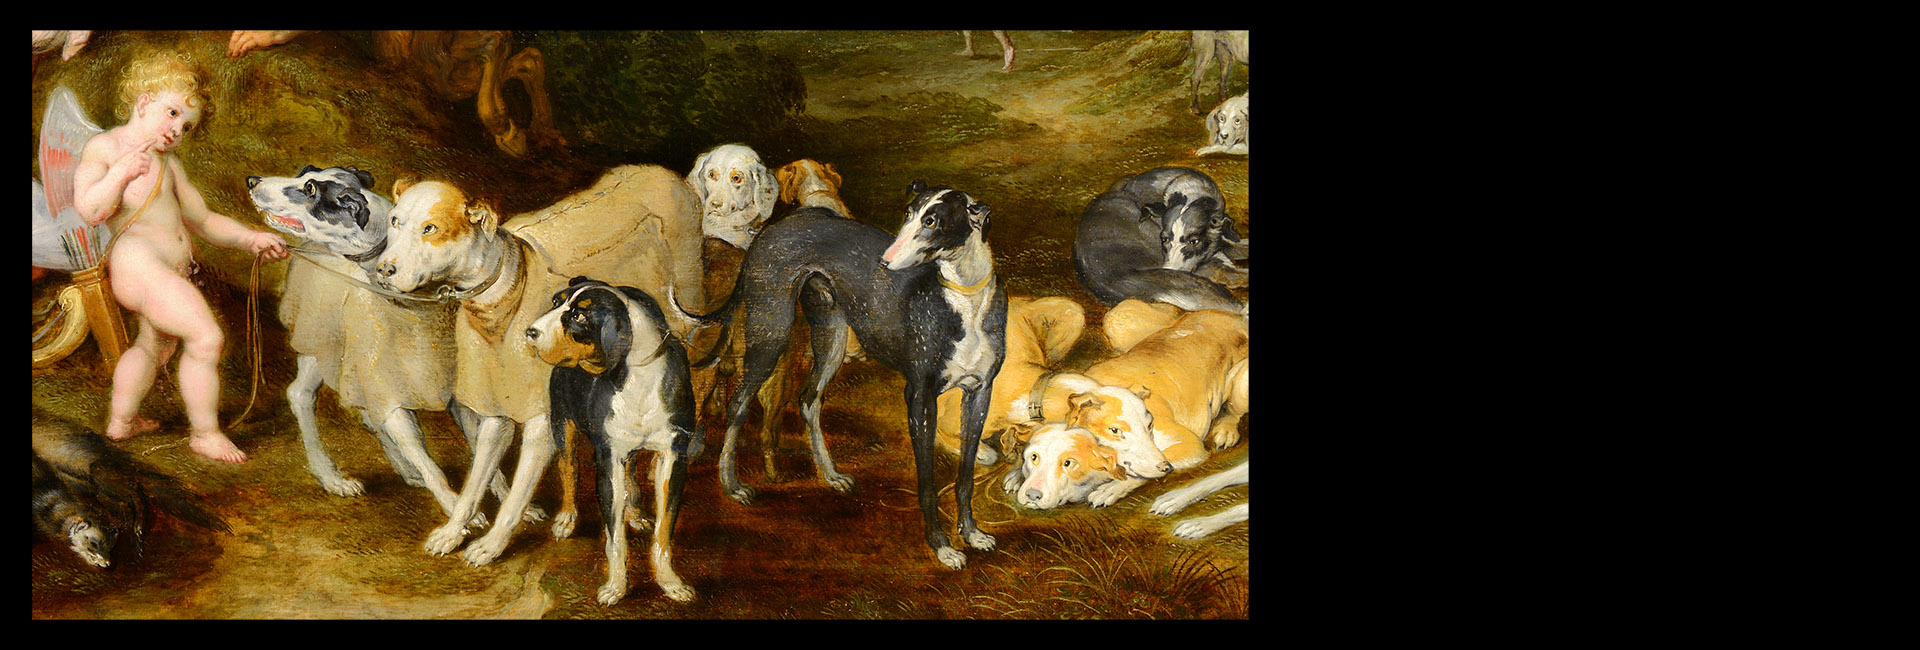 Jan II. Brueghel (1601-1678) [SPÍCÍ DIANA A NYMFY]